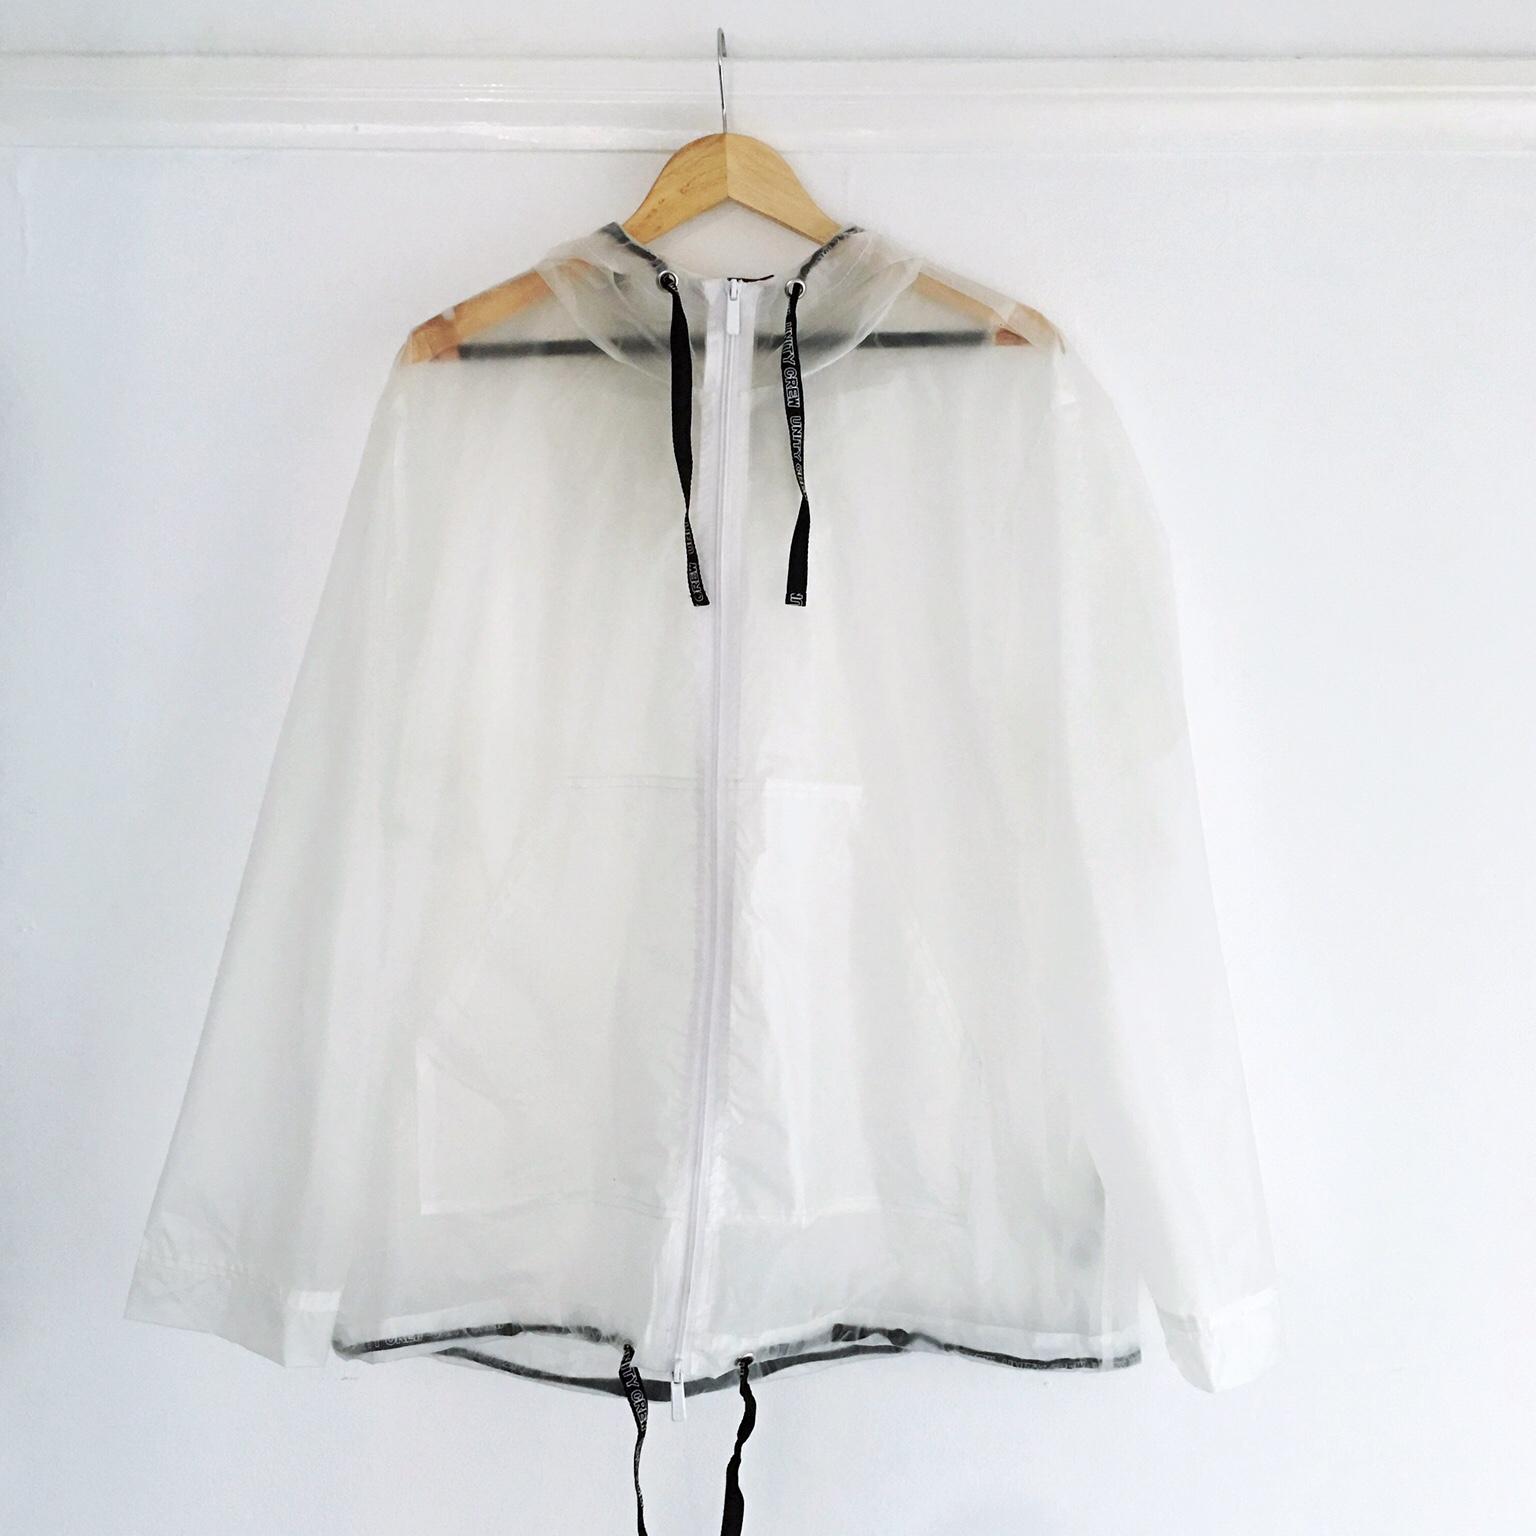 transparent coat zara